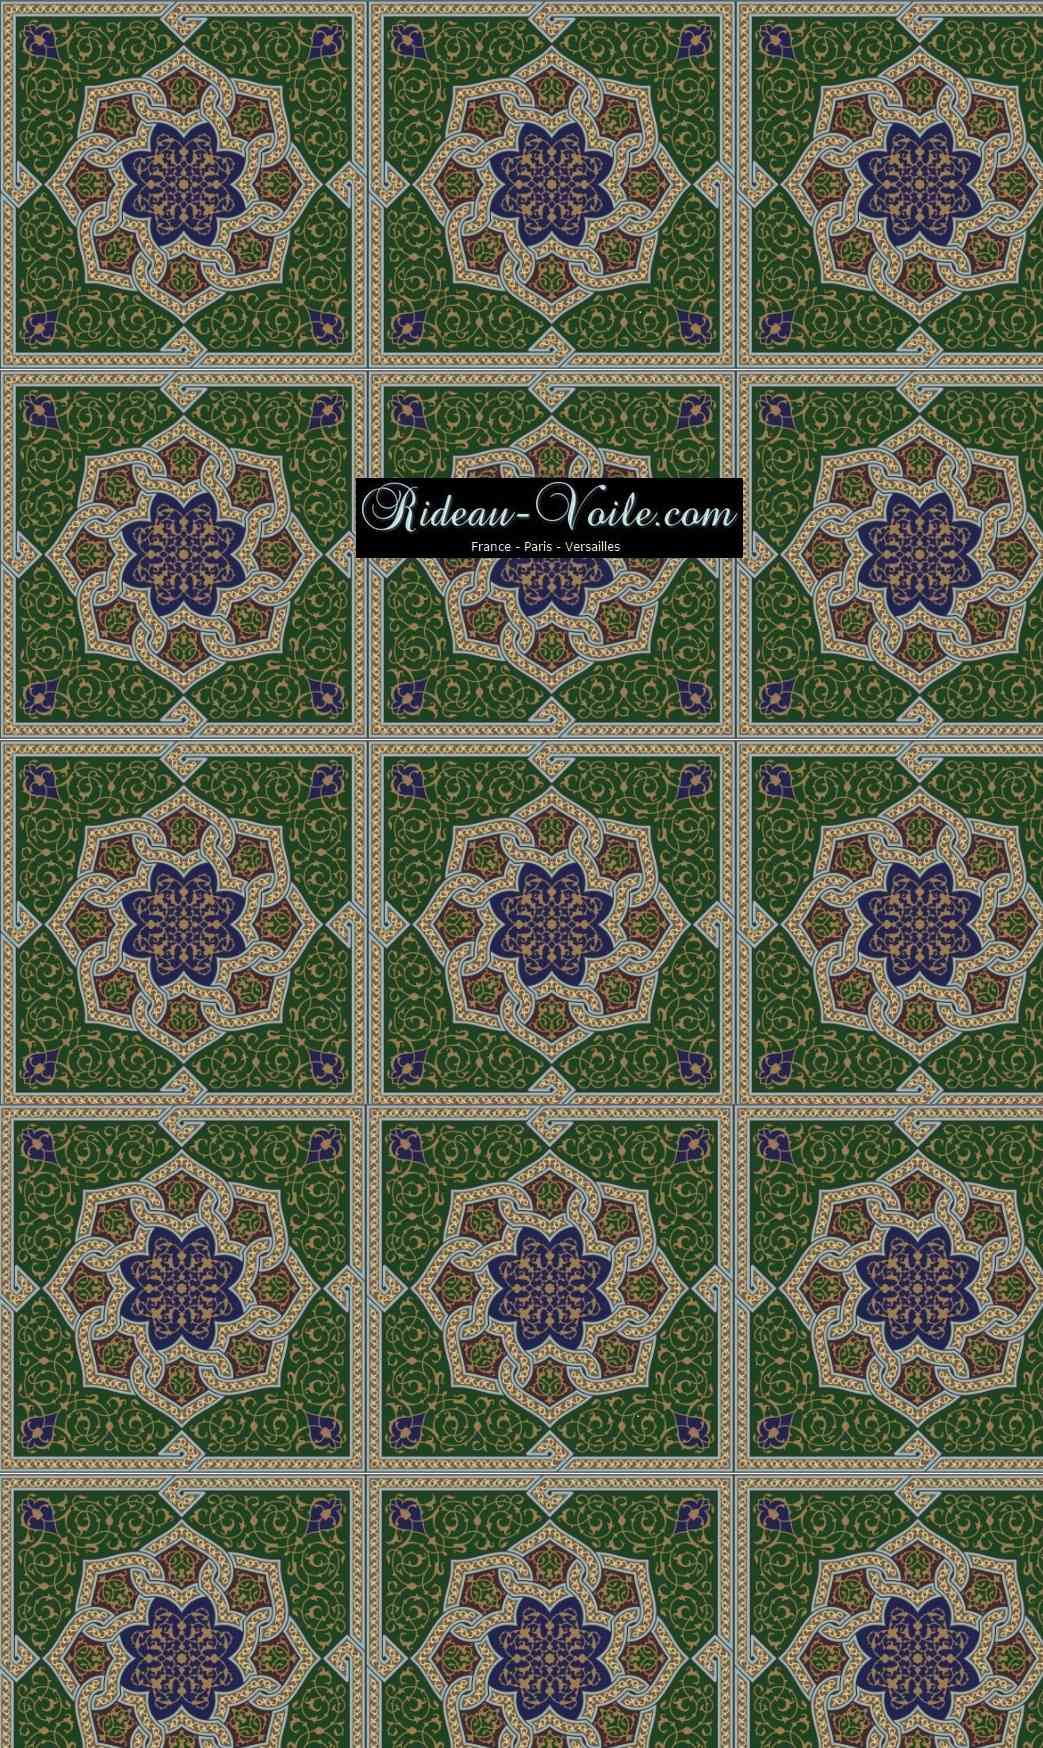 arabesque traditionnel artisanat tissu rideau coussin couette motif afrique oriental maghreb arabe ethnique ameublement décoration sur mesure au mètre